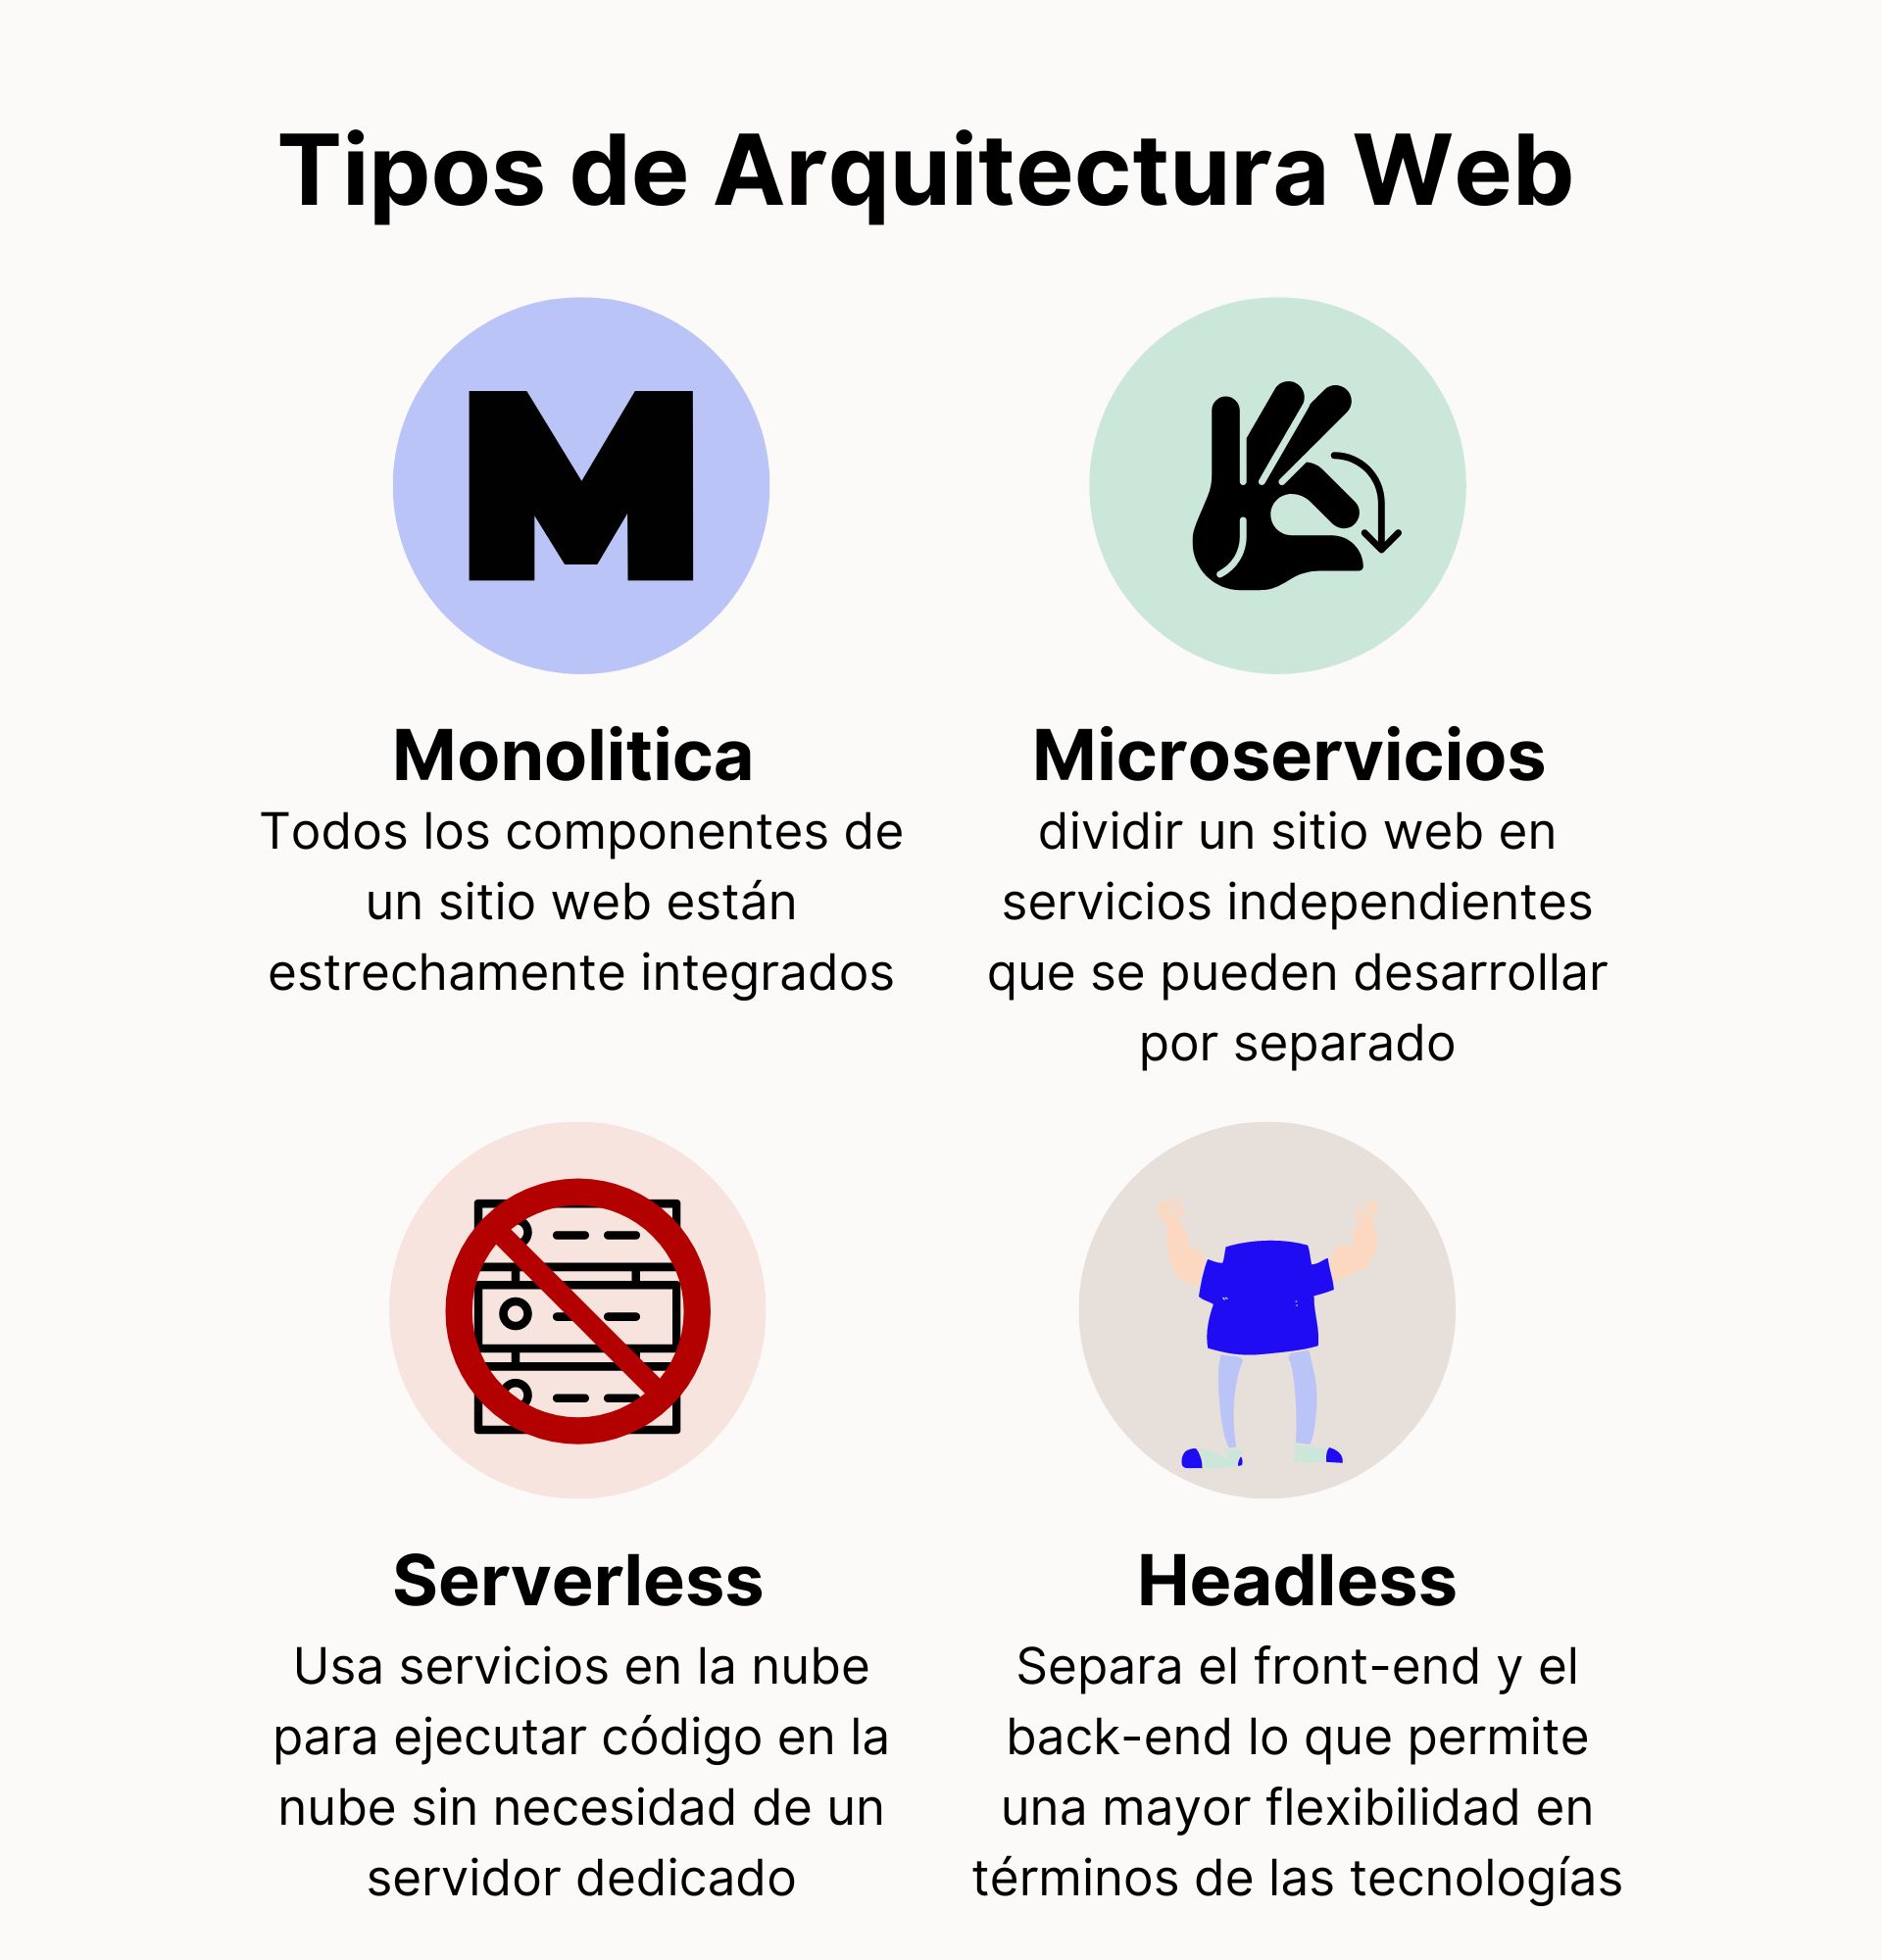 Arquitectura Web - los cuatro tipos